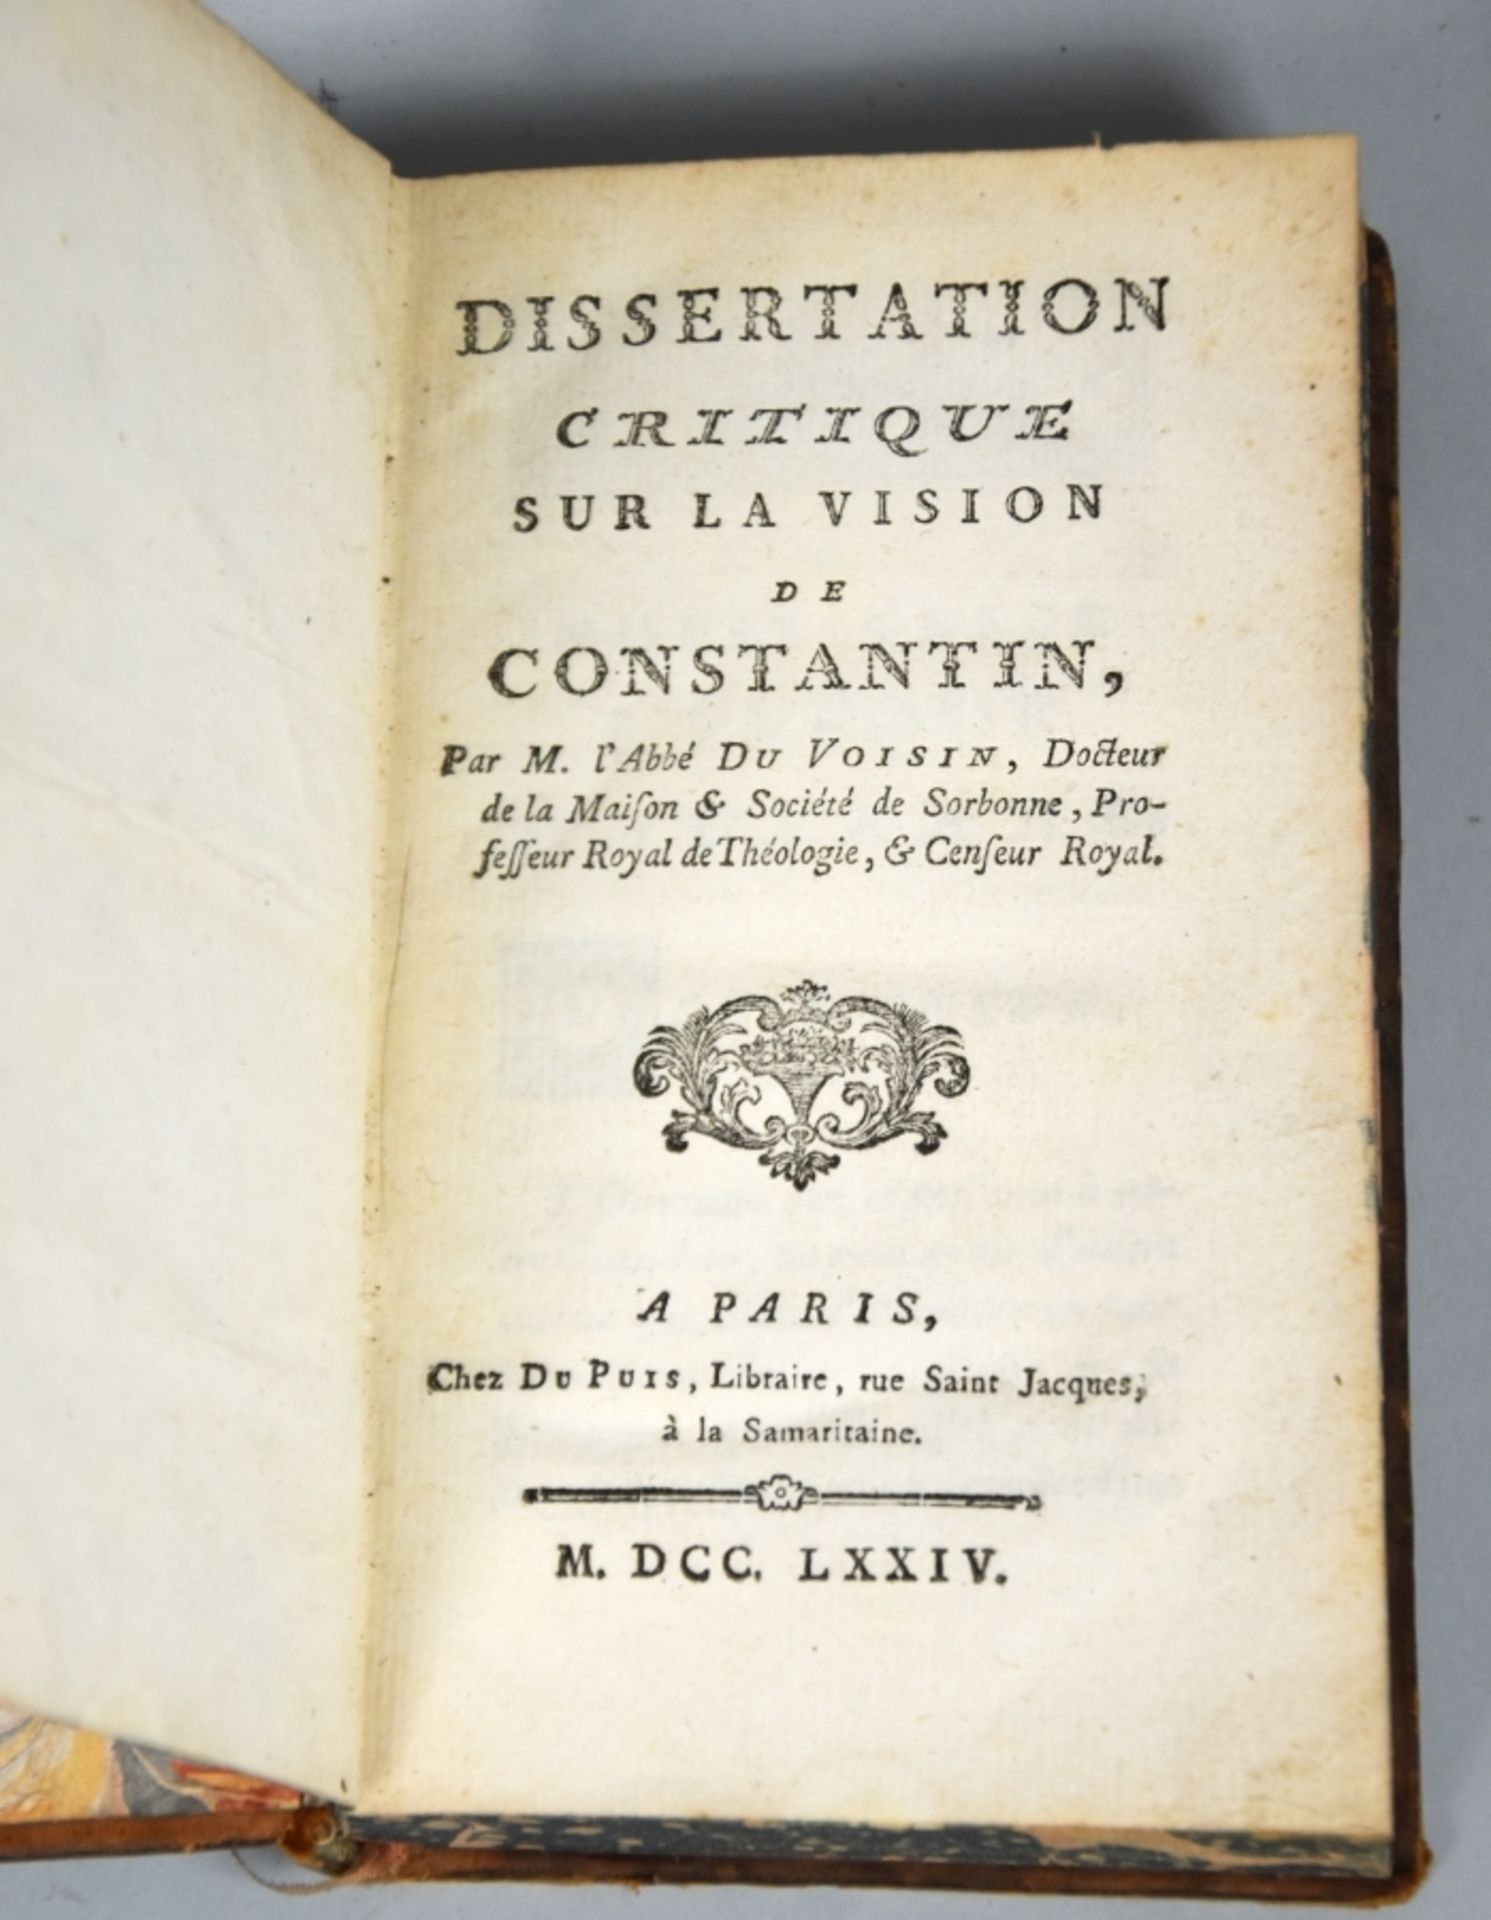 DU VOISIN "Dissertation critique sur la vision de Constantin" 1774 - Bild 2 aus 3